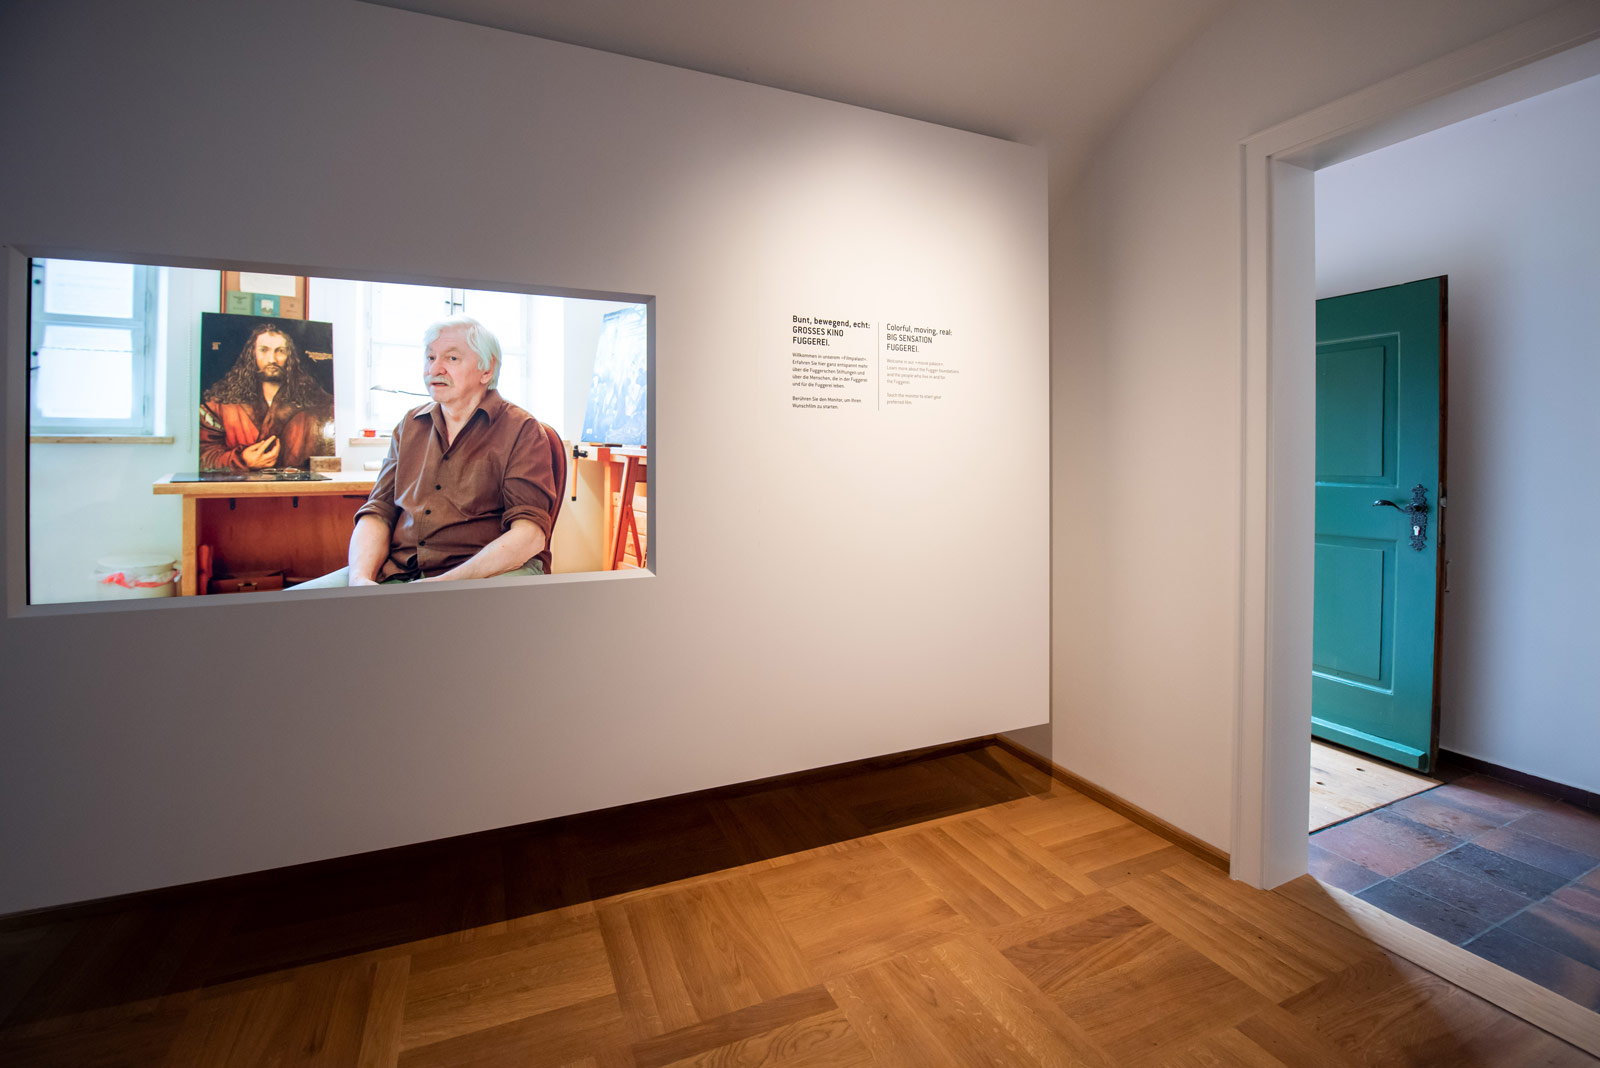 Das Referenzbild für Ausstellungsgestaltung aus der Dauerausstellung Museum der Bewohner zeigt einen Filmsaal